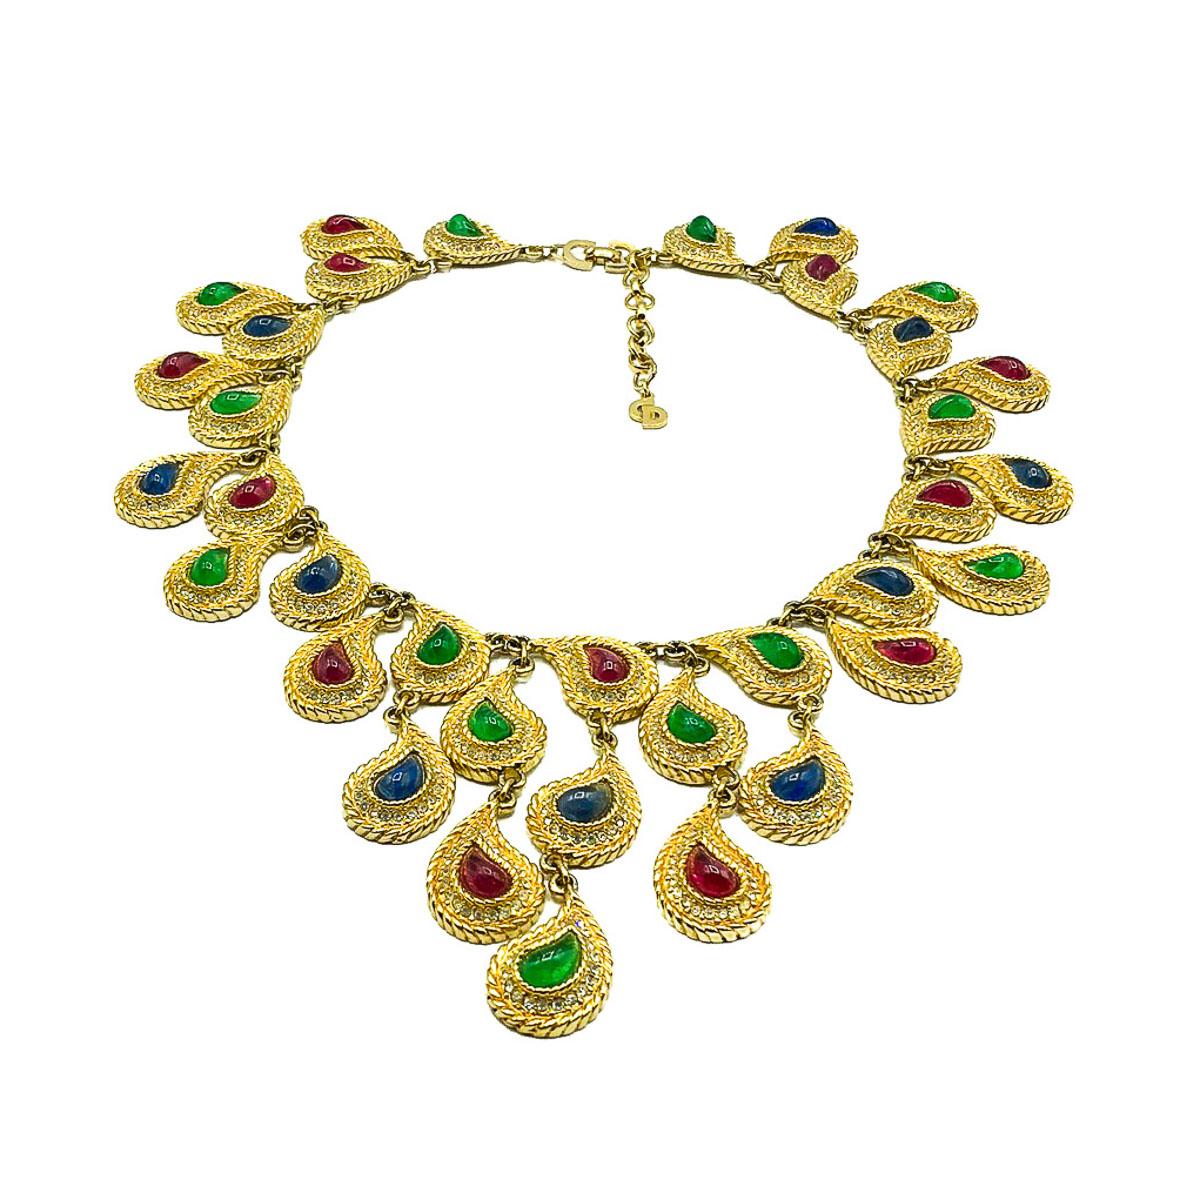 Was für ein Fund. Erhabene und reich mit Juwelen besetzte Vintage Christian Dior Mughal Bib Necklace. Er ist aus hochwertigem vergoldetem Metall gefertigt und mit exquisiten Glaspaisleysteinen besetzt, die fehlerhafte Rubine, Saphire und Smaragde